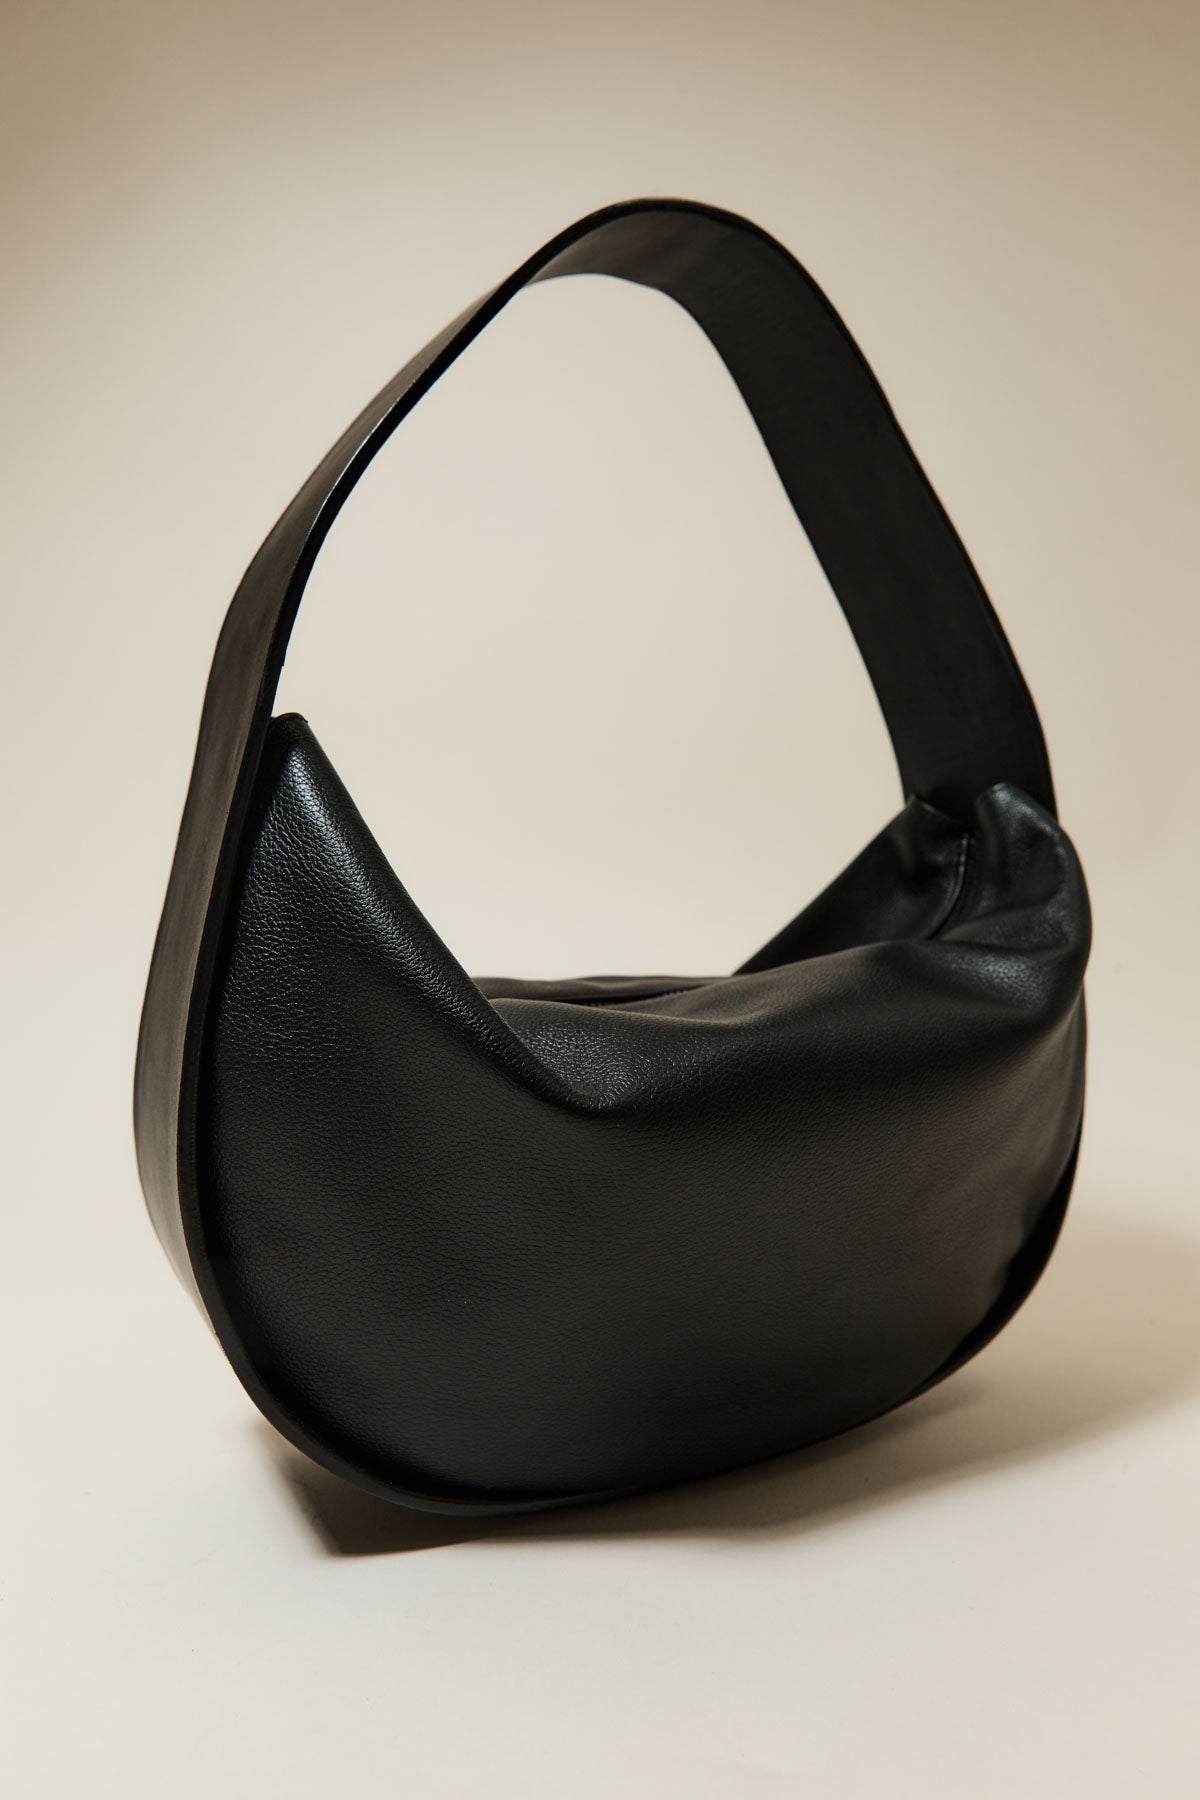 Soft Arc Bag - Black